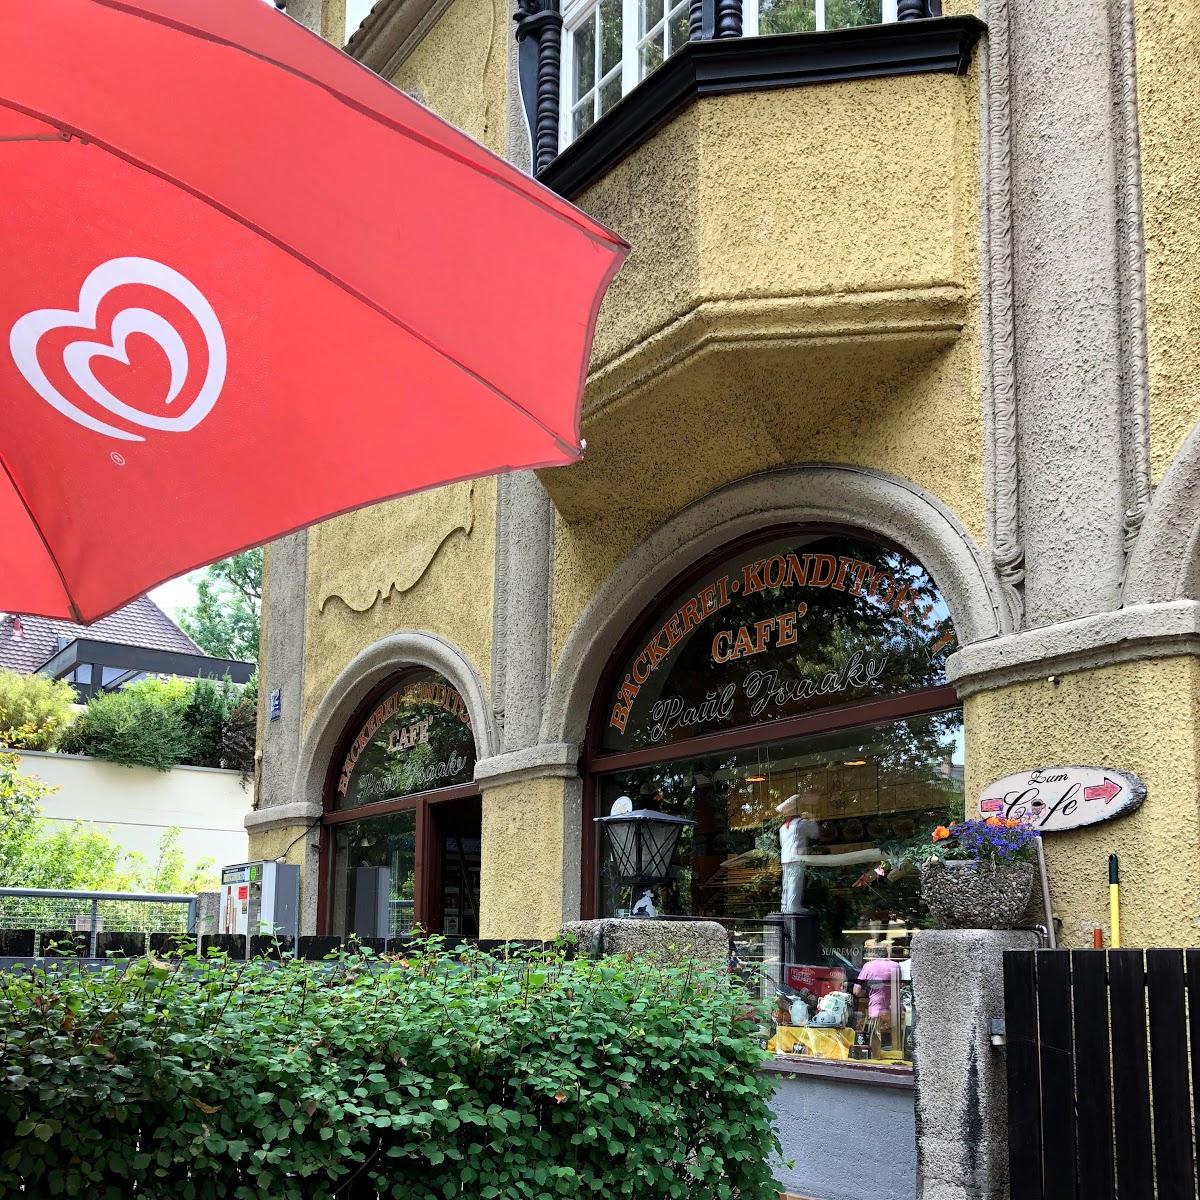 Restaurant "Bäckerei Konditorei Cafe Paul Isaak" in München